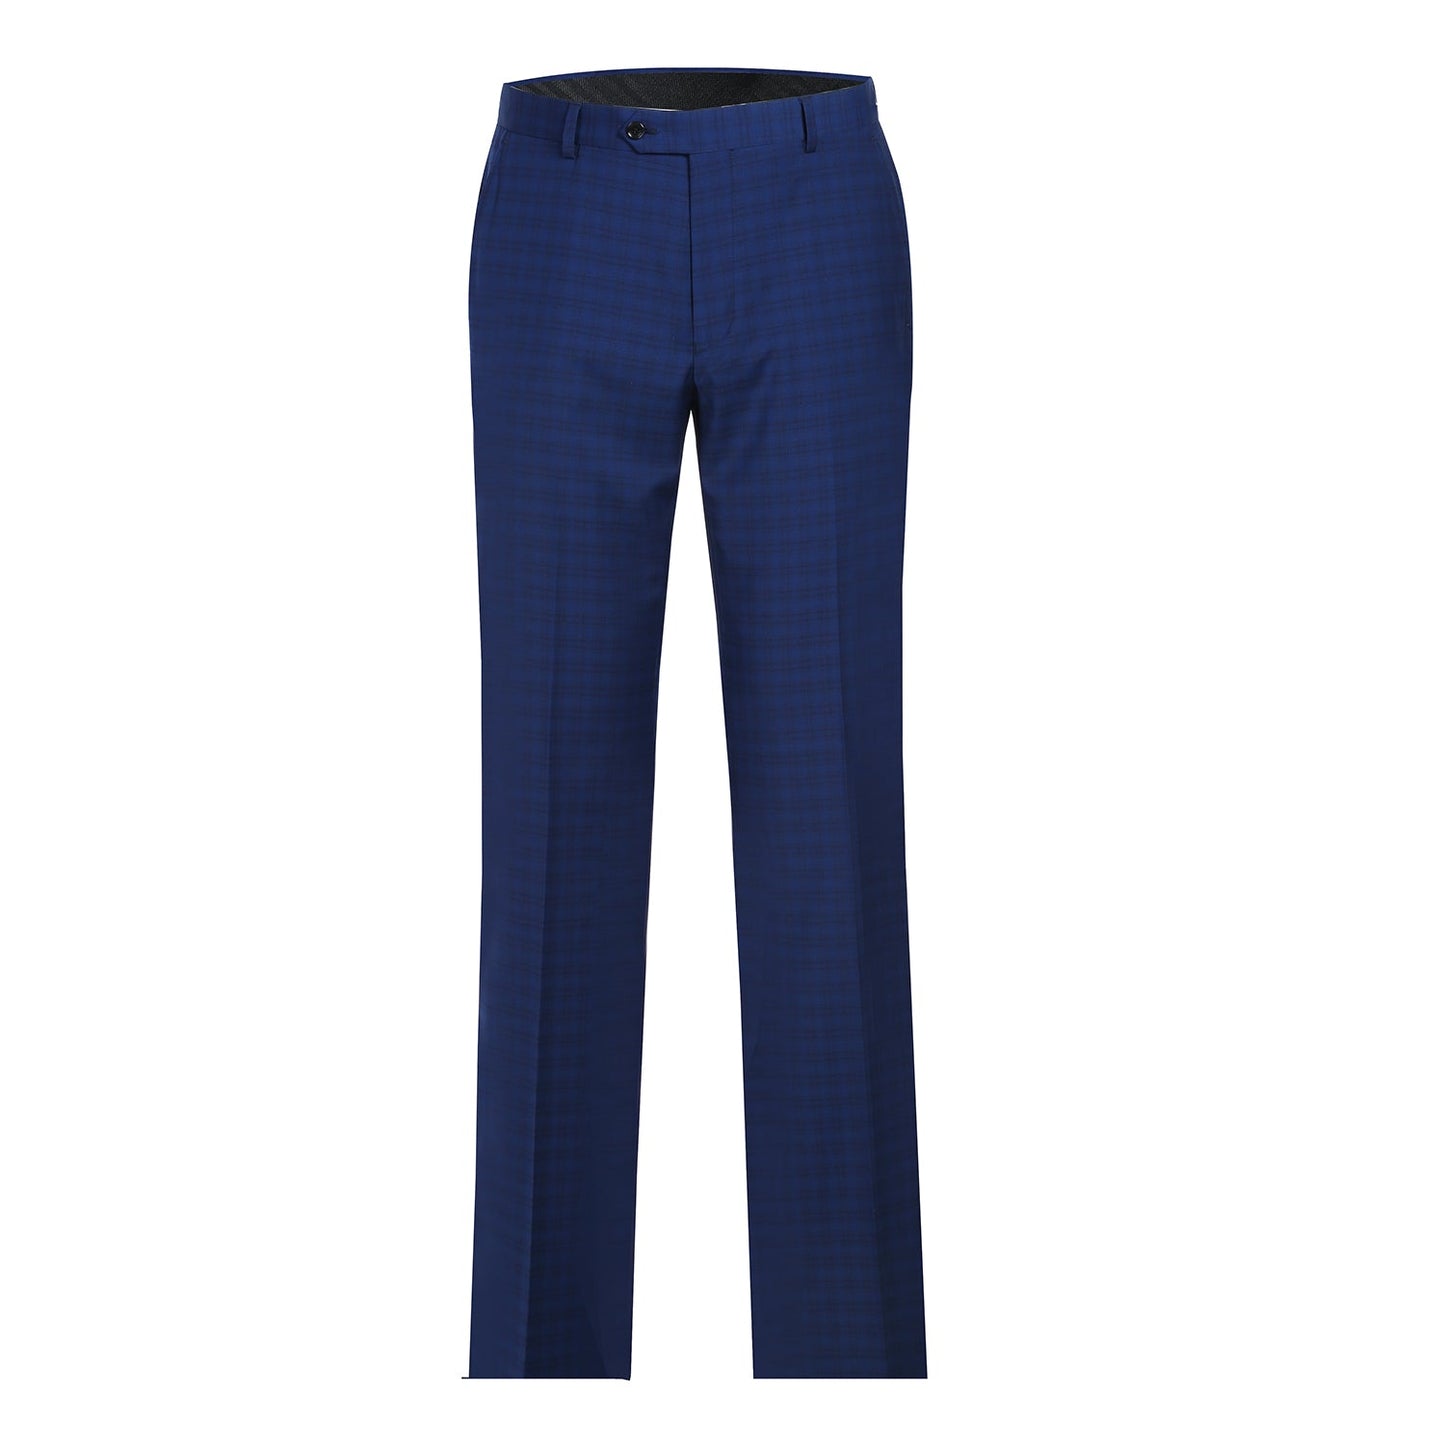 564-2 Men's Classic Fit Wool Blend Blue Check Suit